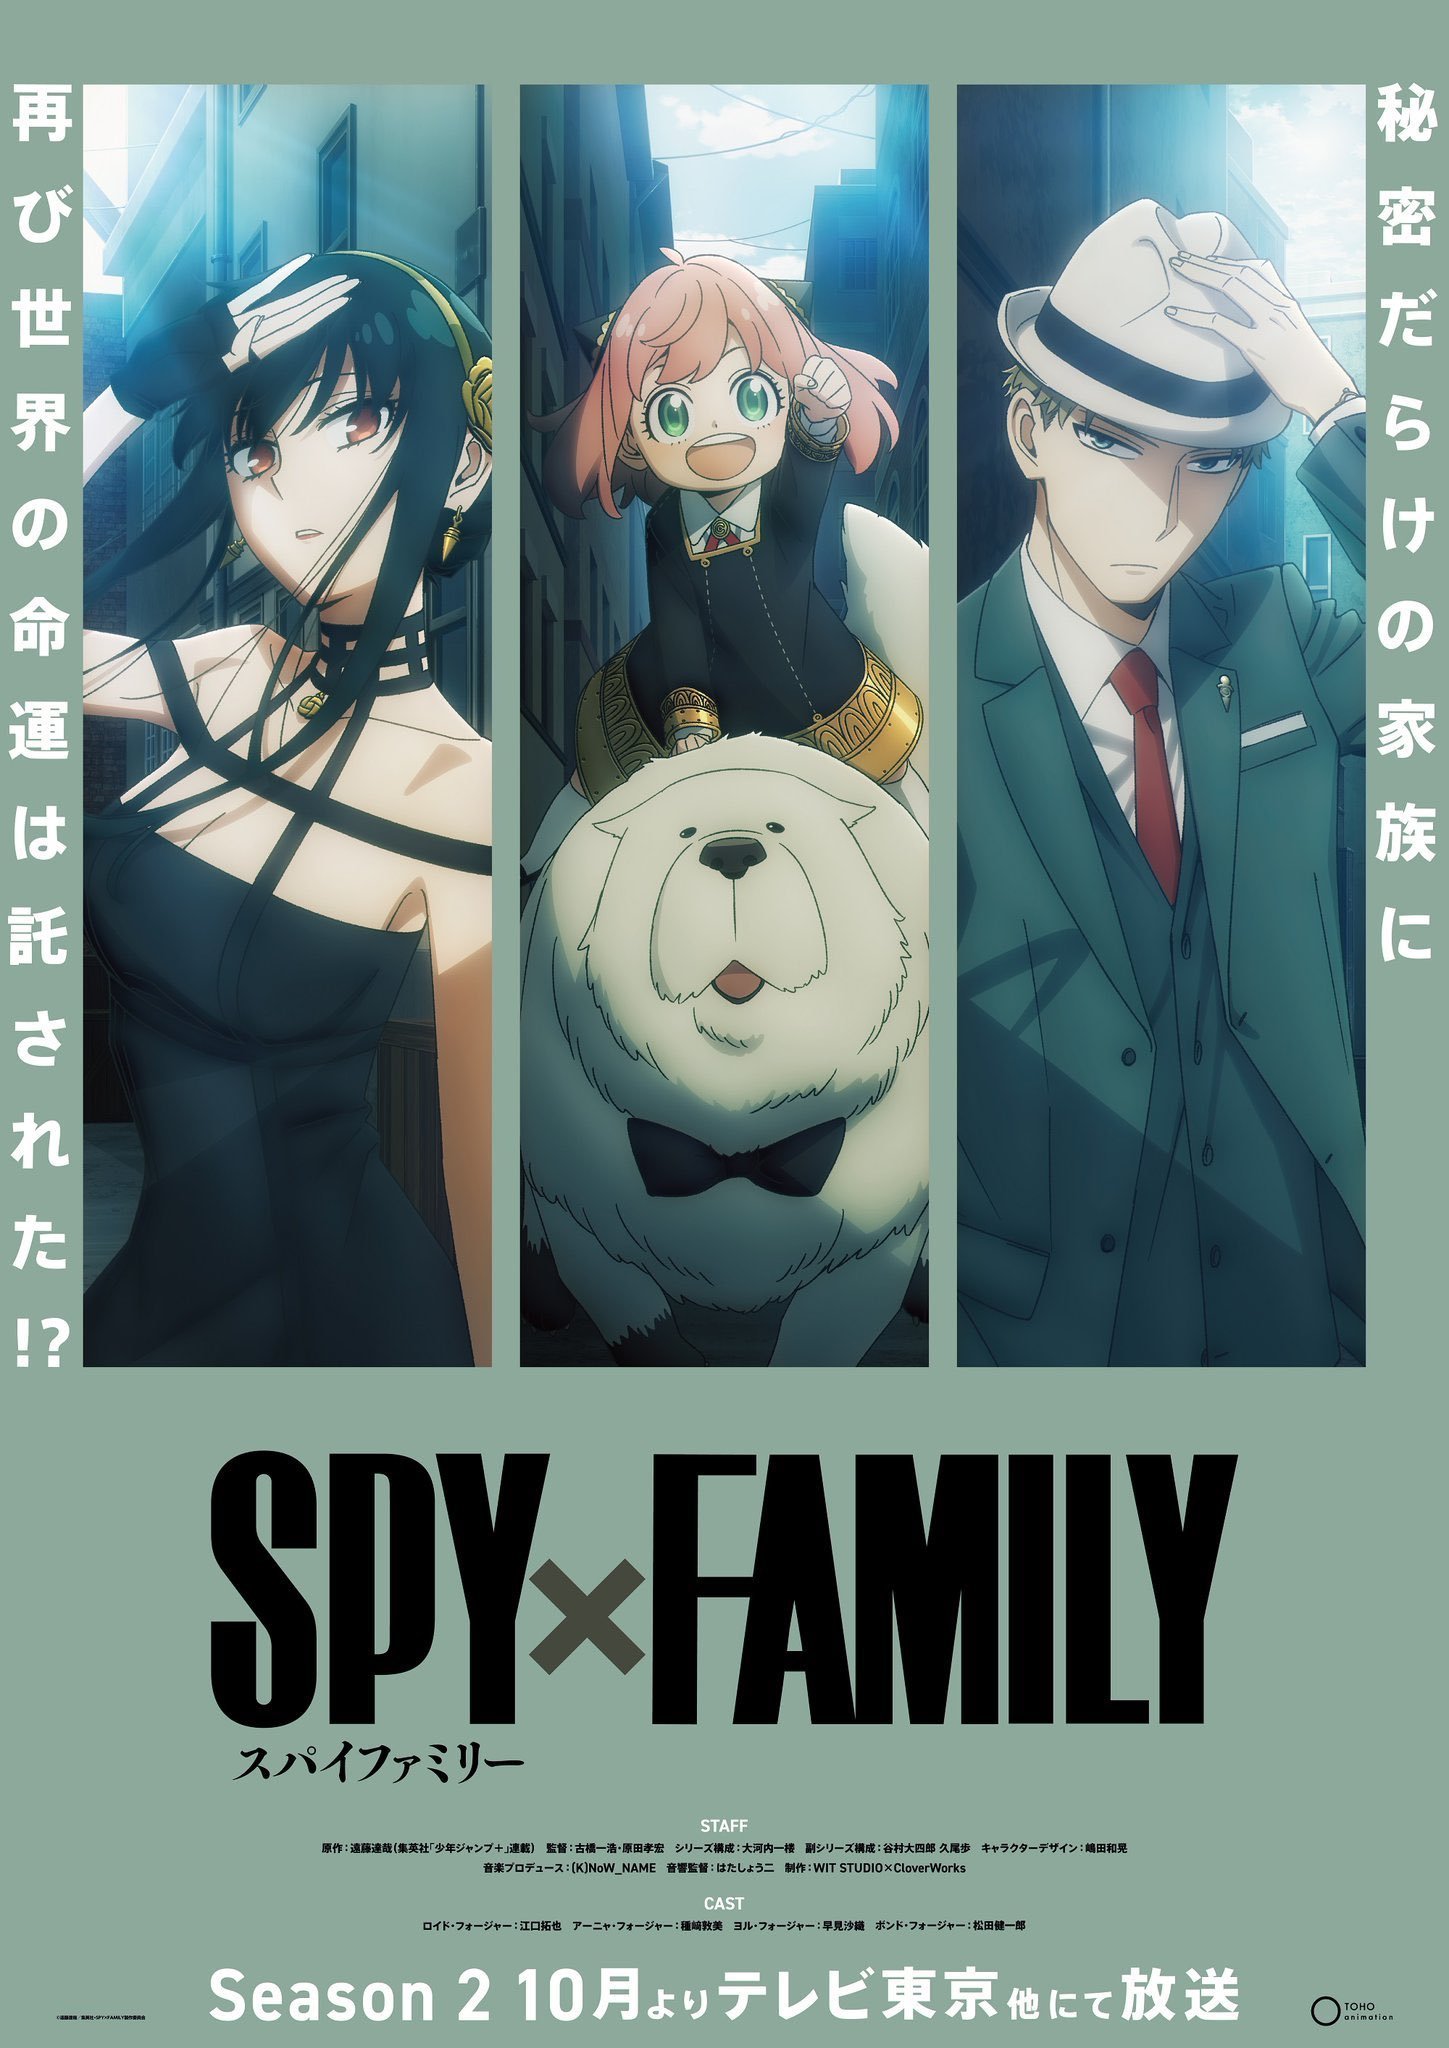 spy family 3 temporada data de lançamento